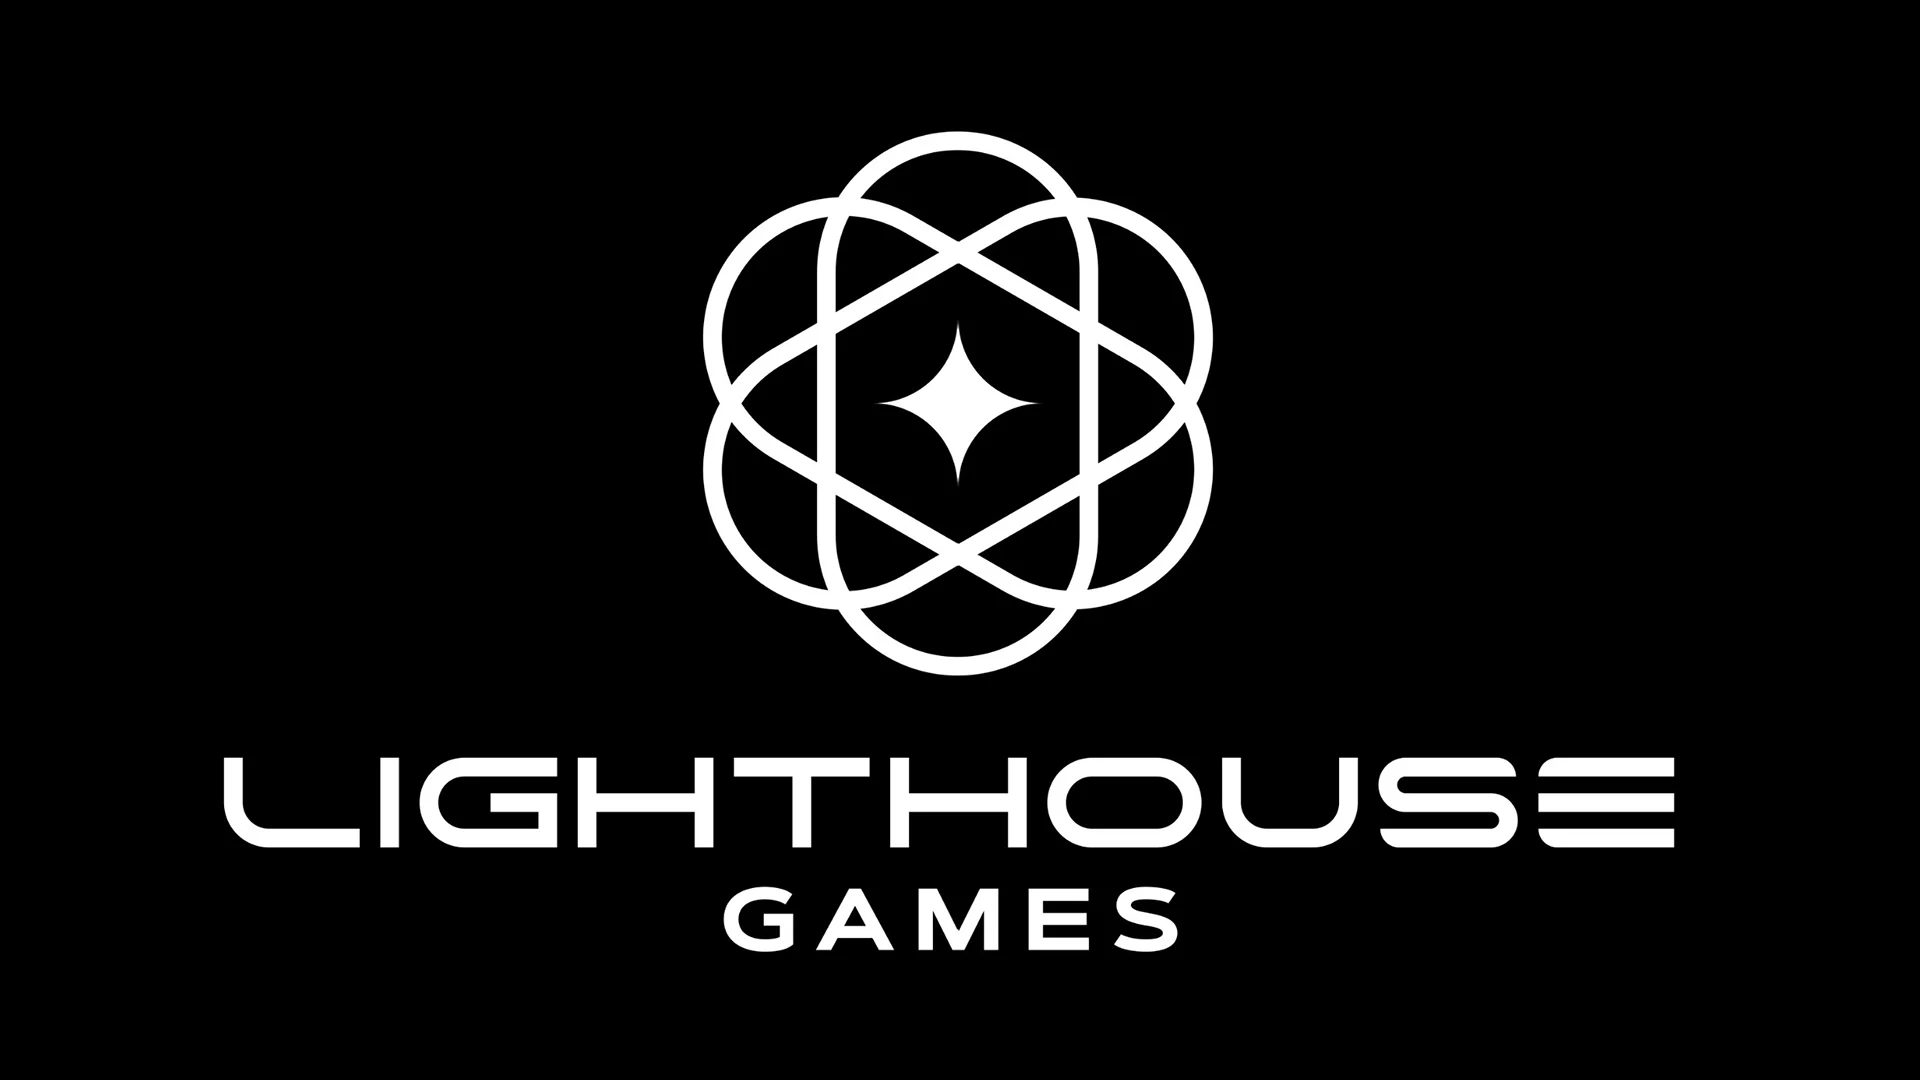 Lighthouse Games, il nuovo studio del fondatore di Playground Games, ha ricevuto un importante investimento dalla cinese Tencent.